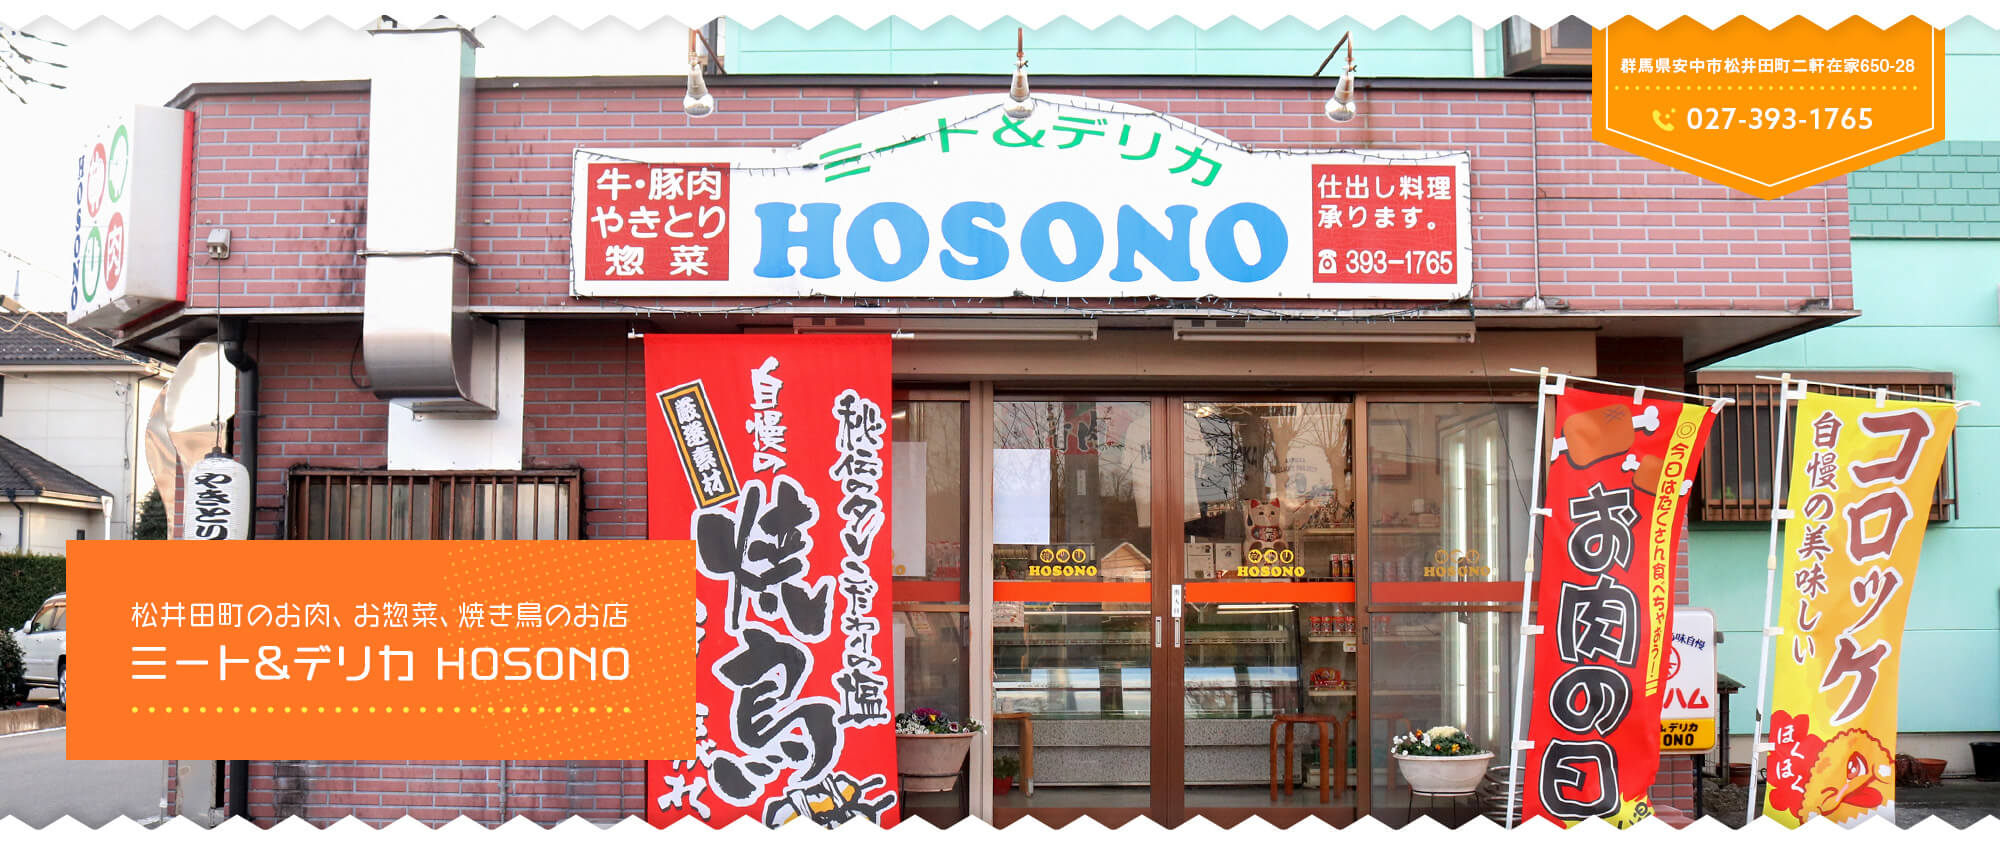 松井田町のお肉、お惣菜、焼き鳥のお店 ミート&デリカ HOSONO